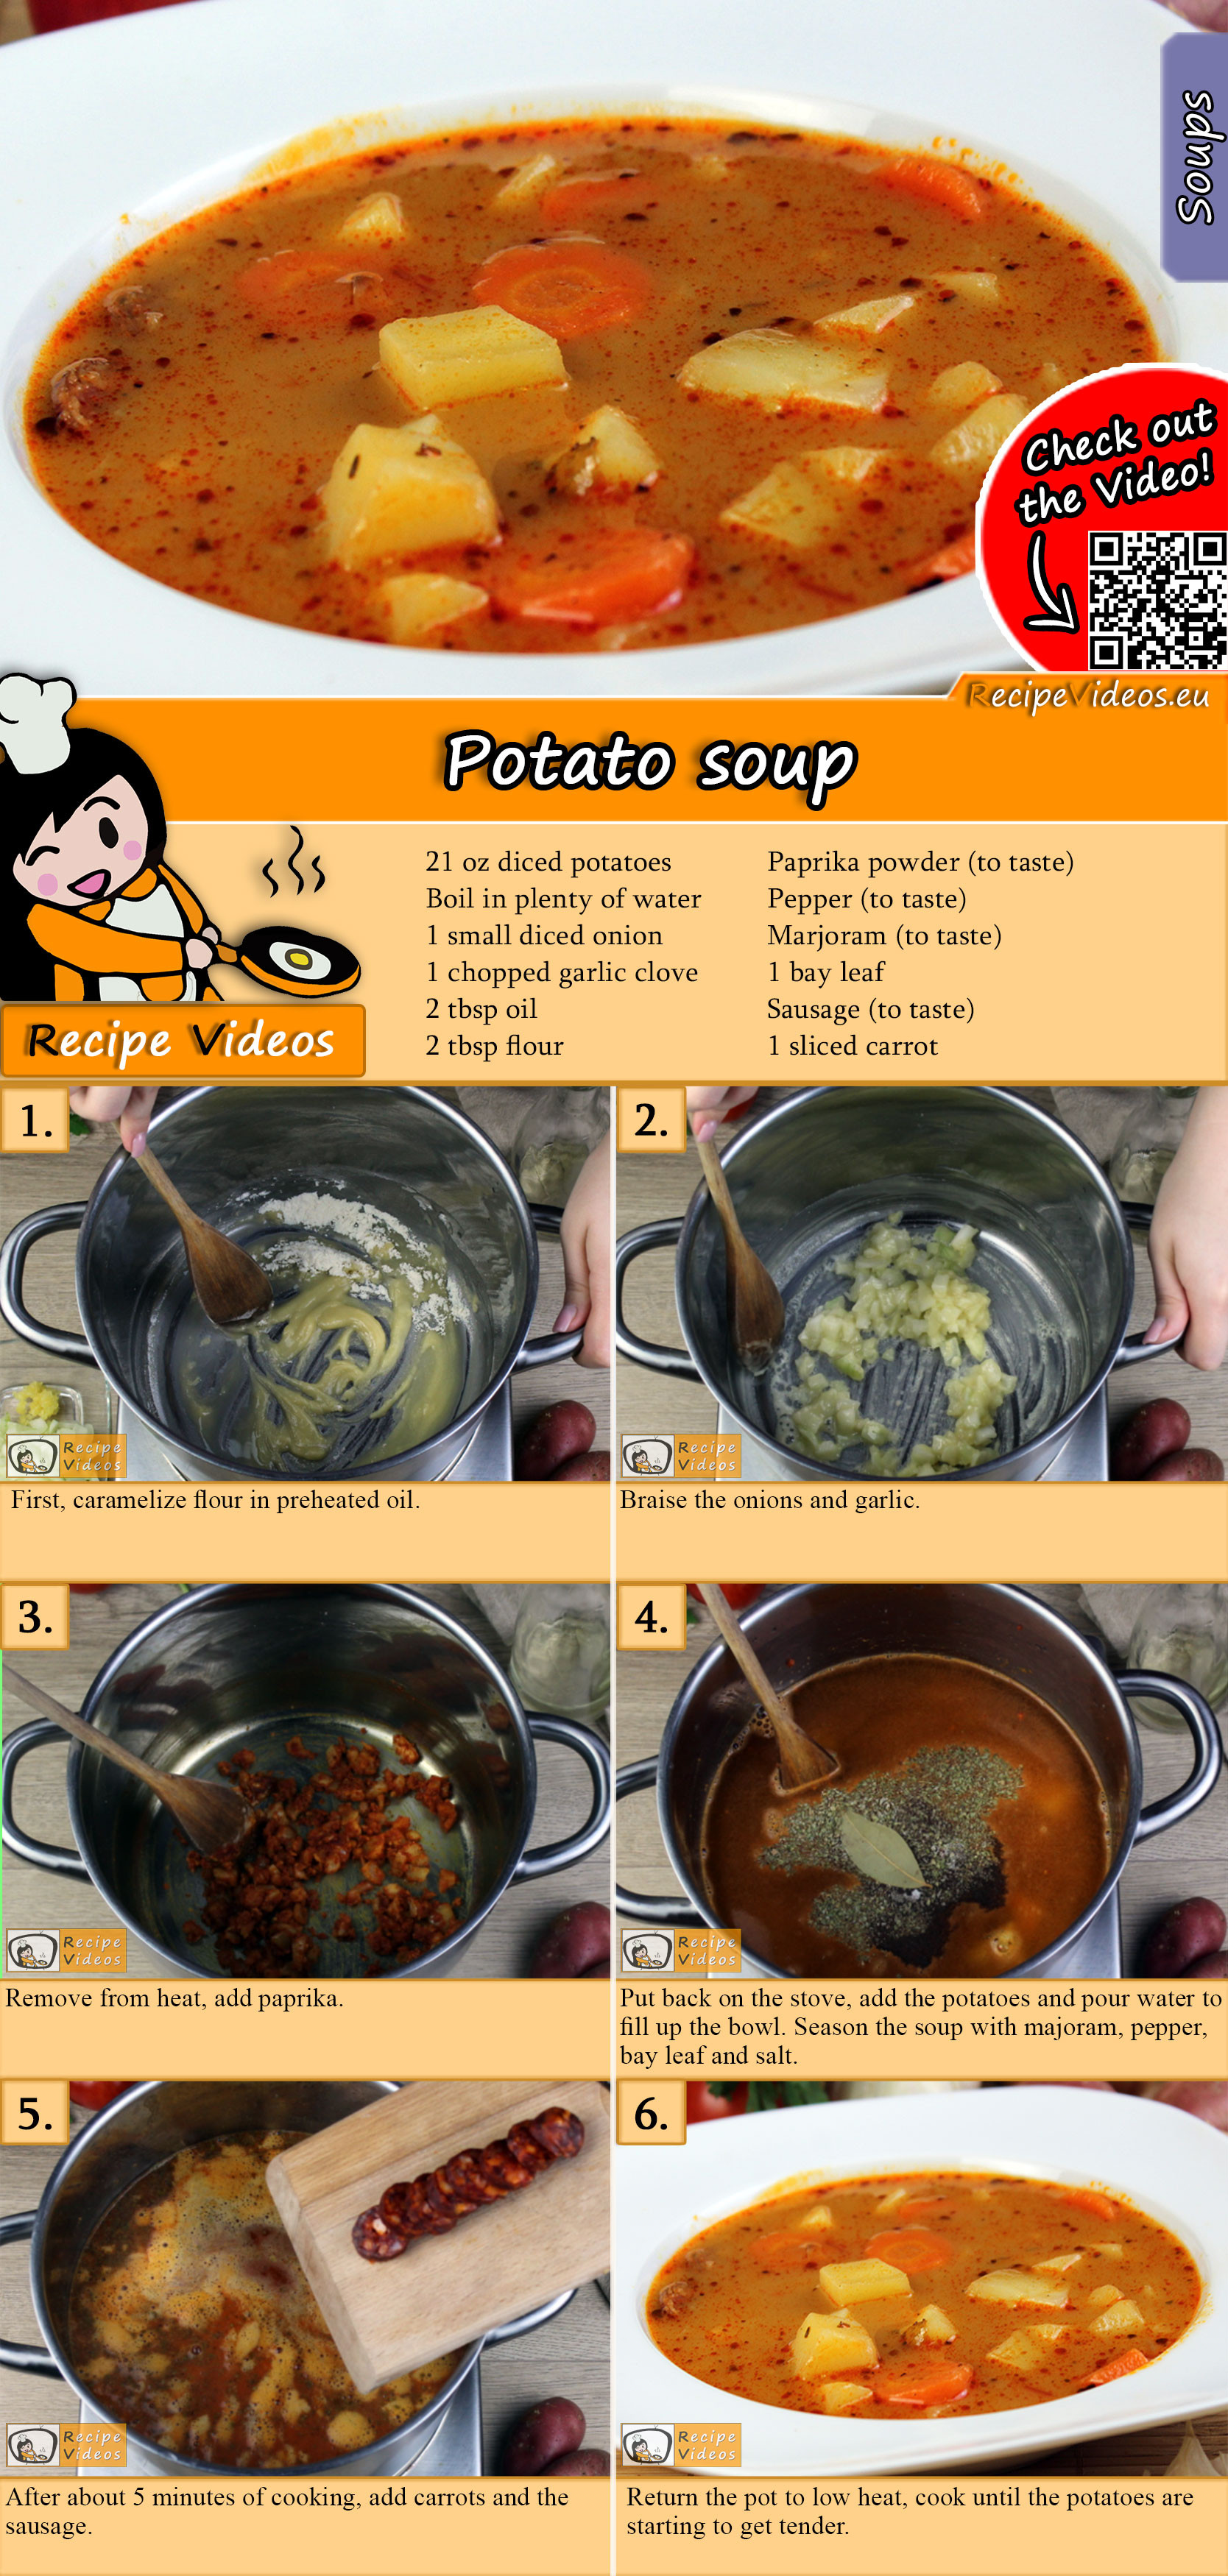 Potato soup recipe with video